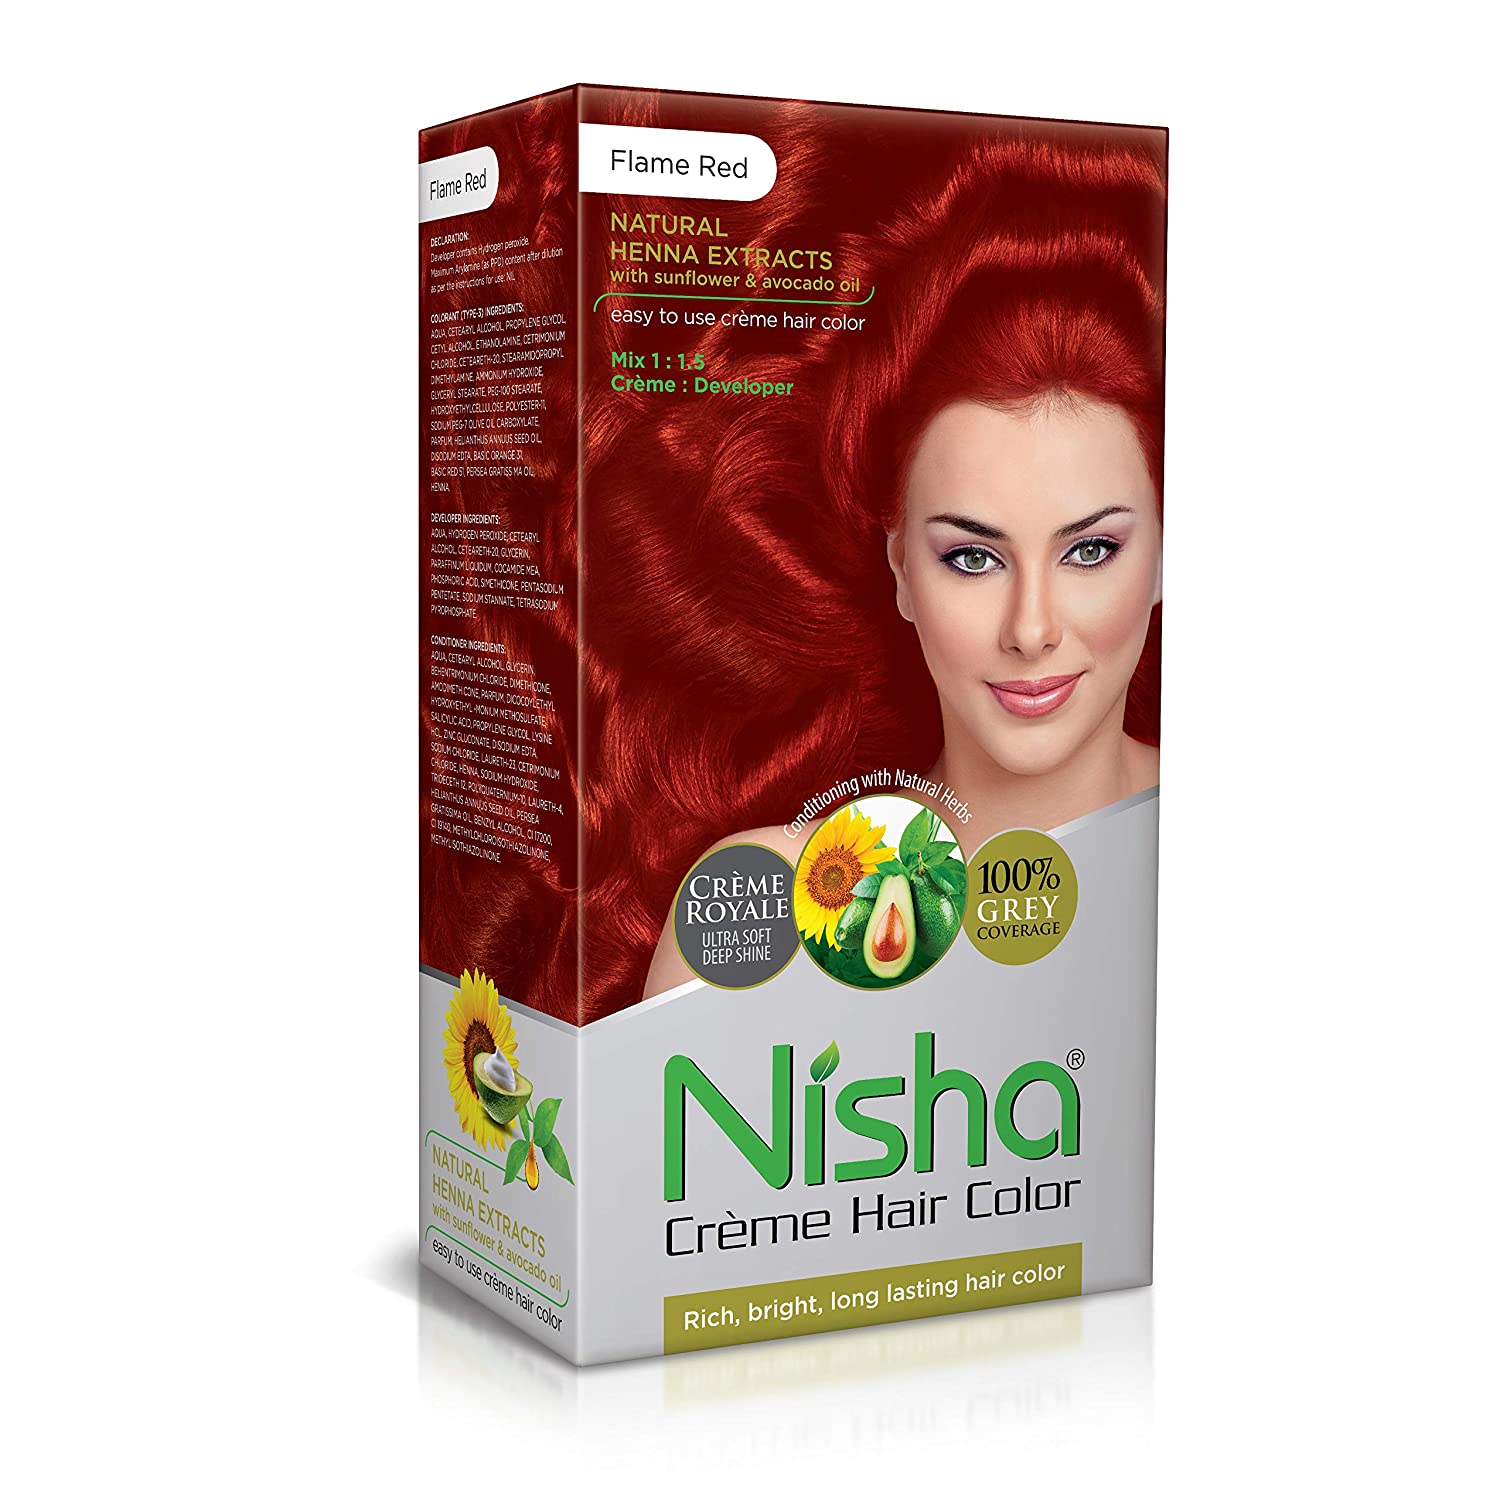 NISHA crème hair colour, Flame Red- souplesse, coloration, brillance et longueur